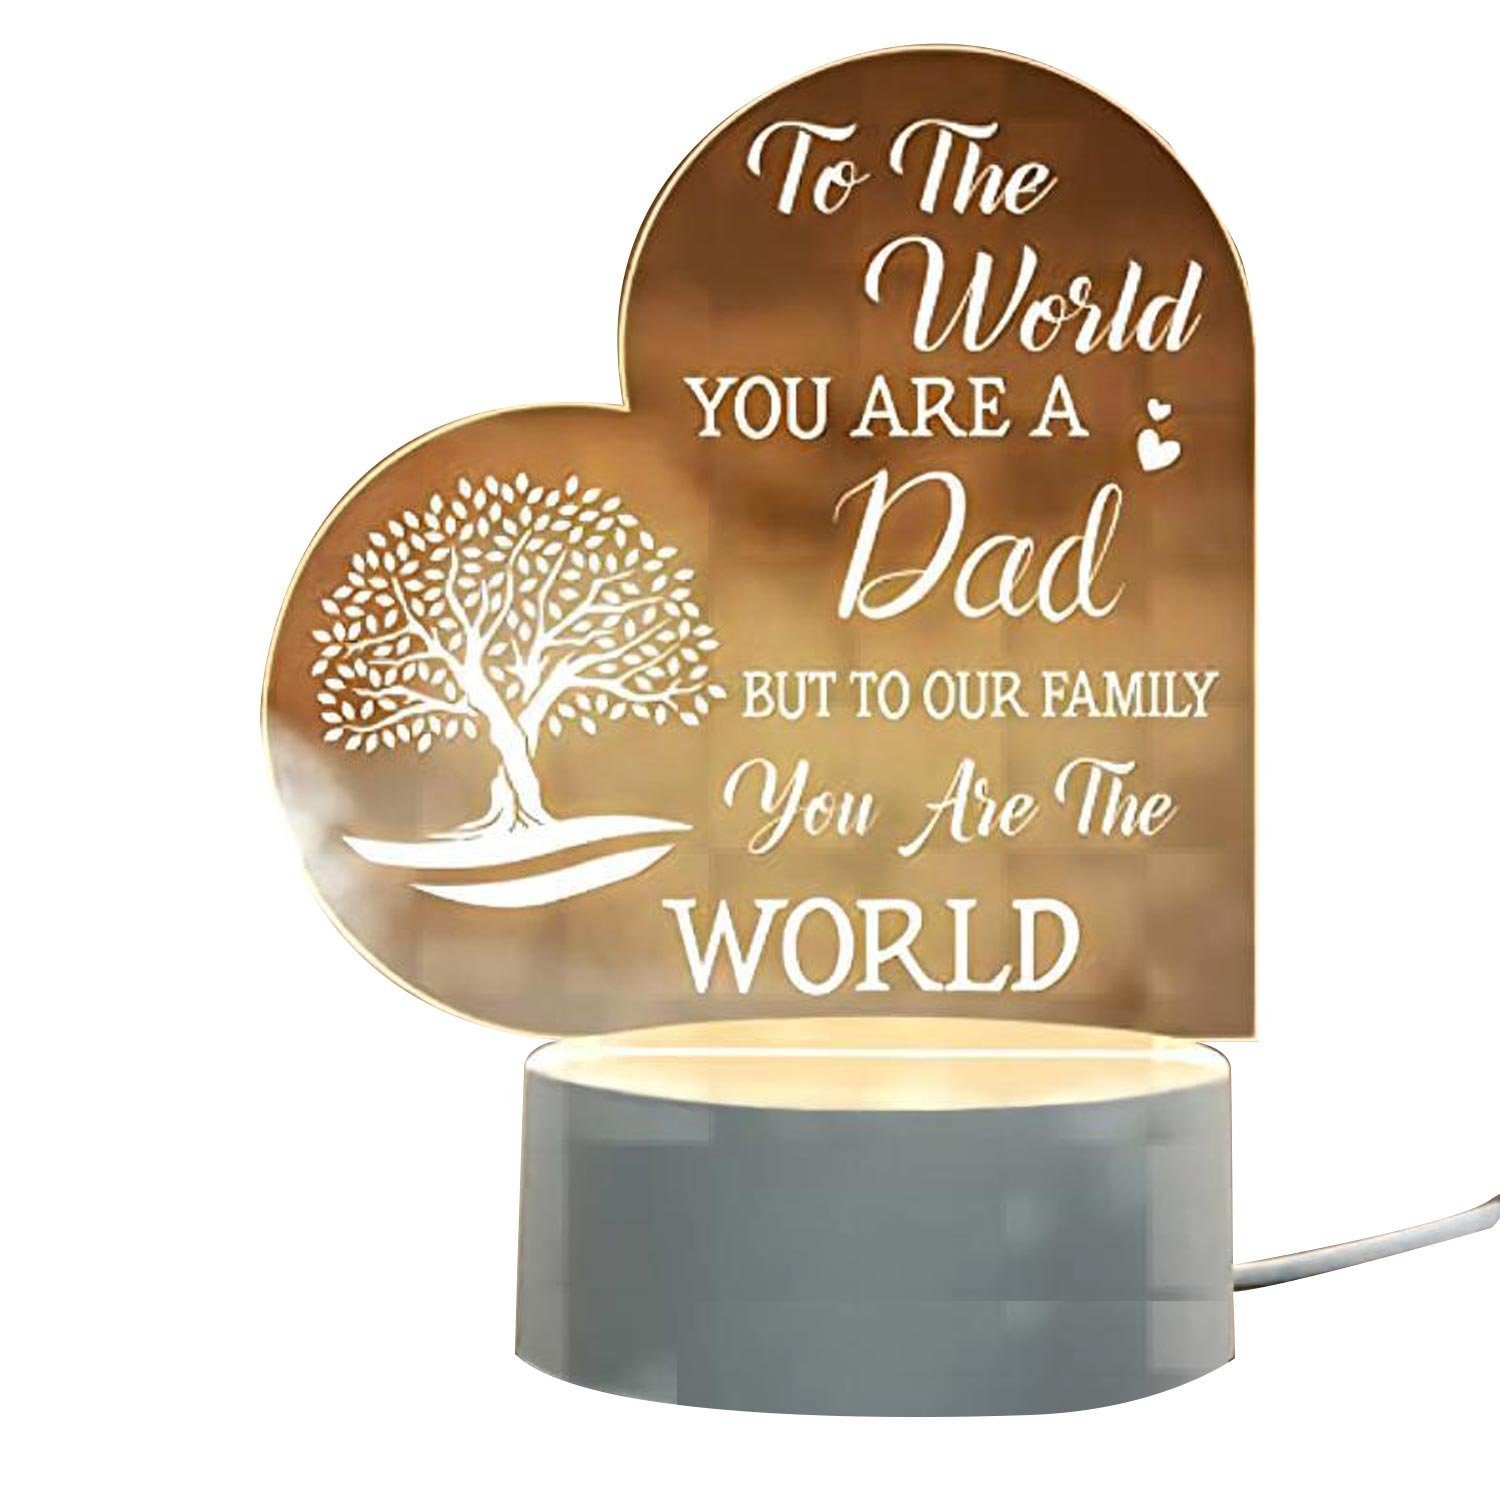 MAGICSHE LED Papa, Licht Integration, Geburtstagsgeschenk Vatertag Für permanente 4 permanente Illusion für LED Geschenk ein Dad, Nachtlicht Integration, 3D einen Mann, Stil